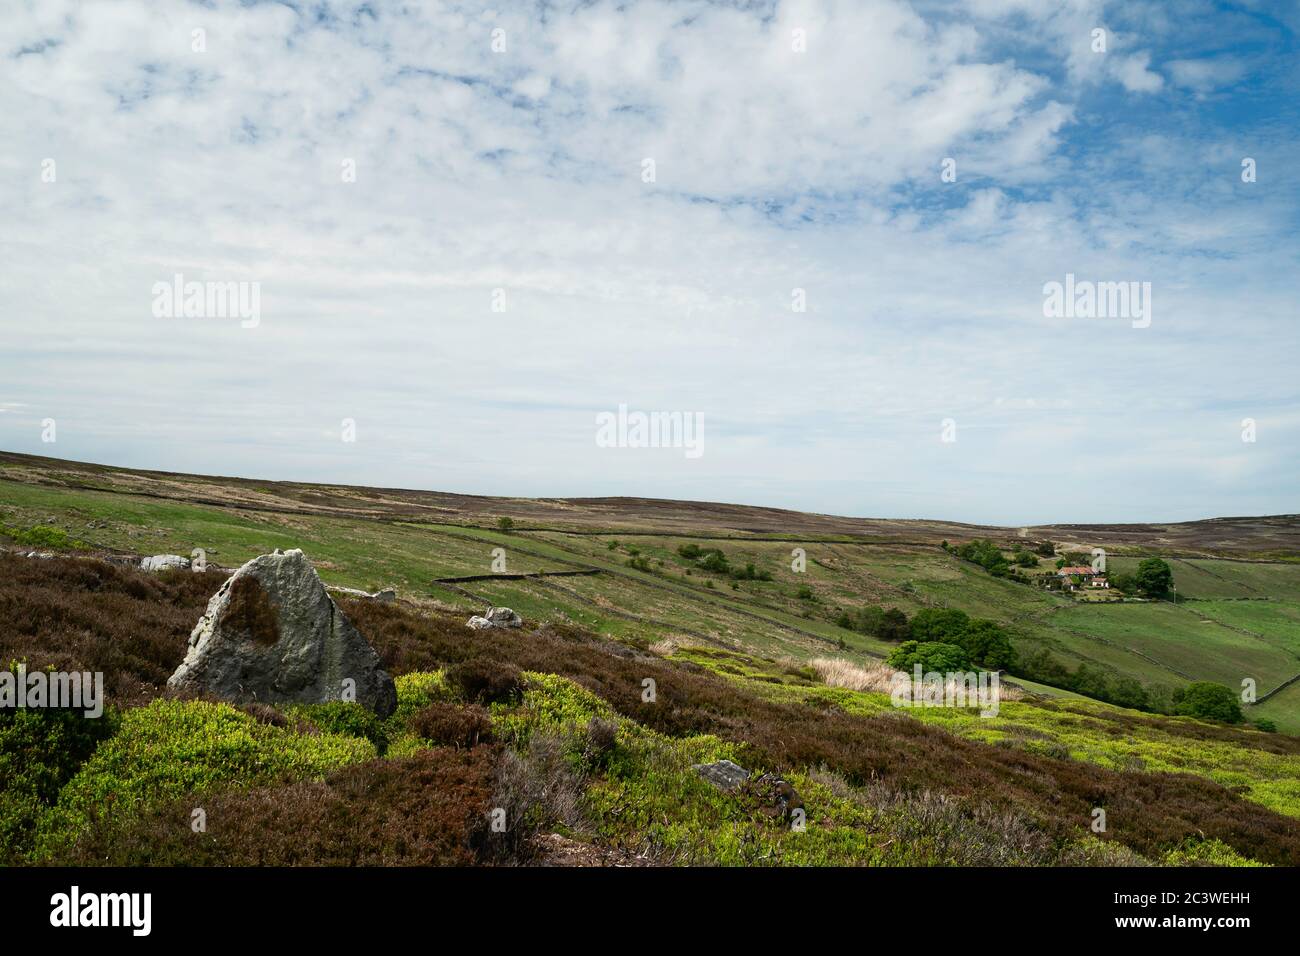 North York Moors mit prominenter Heide, Bäumen, Feldern, Heidekraut und Gräsern unter blauem, bewölktem Himmel im Frühling in Glaisdale, Yorkshire, Großbritannien. Stockfoto